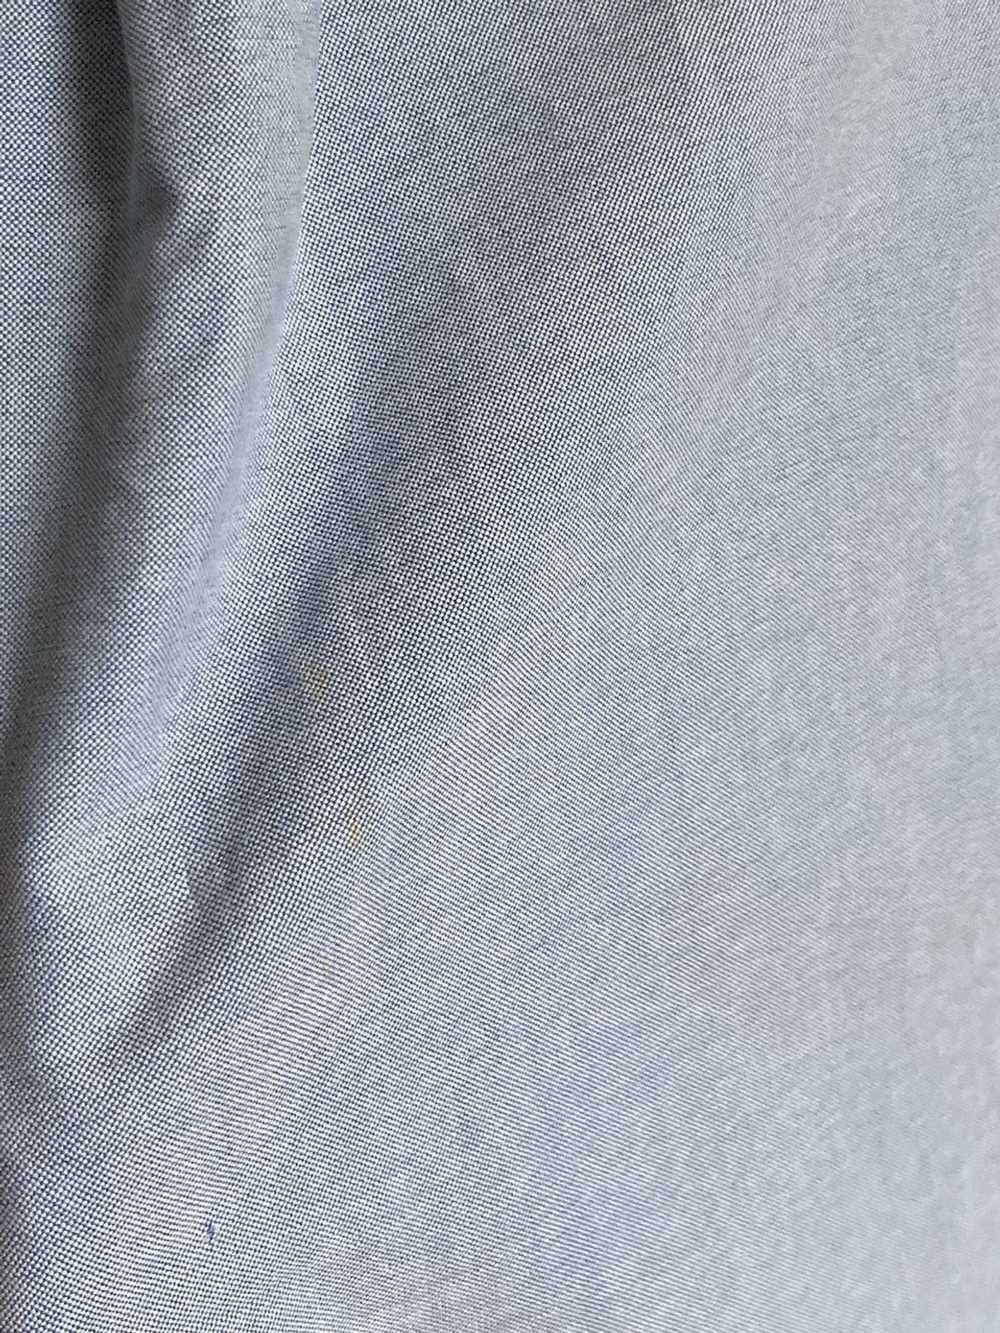 Polo Ralph Lauren × Ralph Lauren × Rare Ralph Lau… - image 12